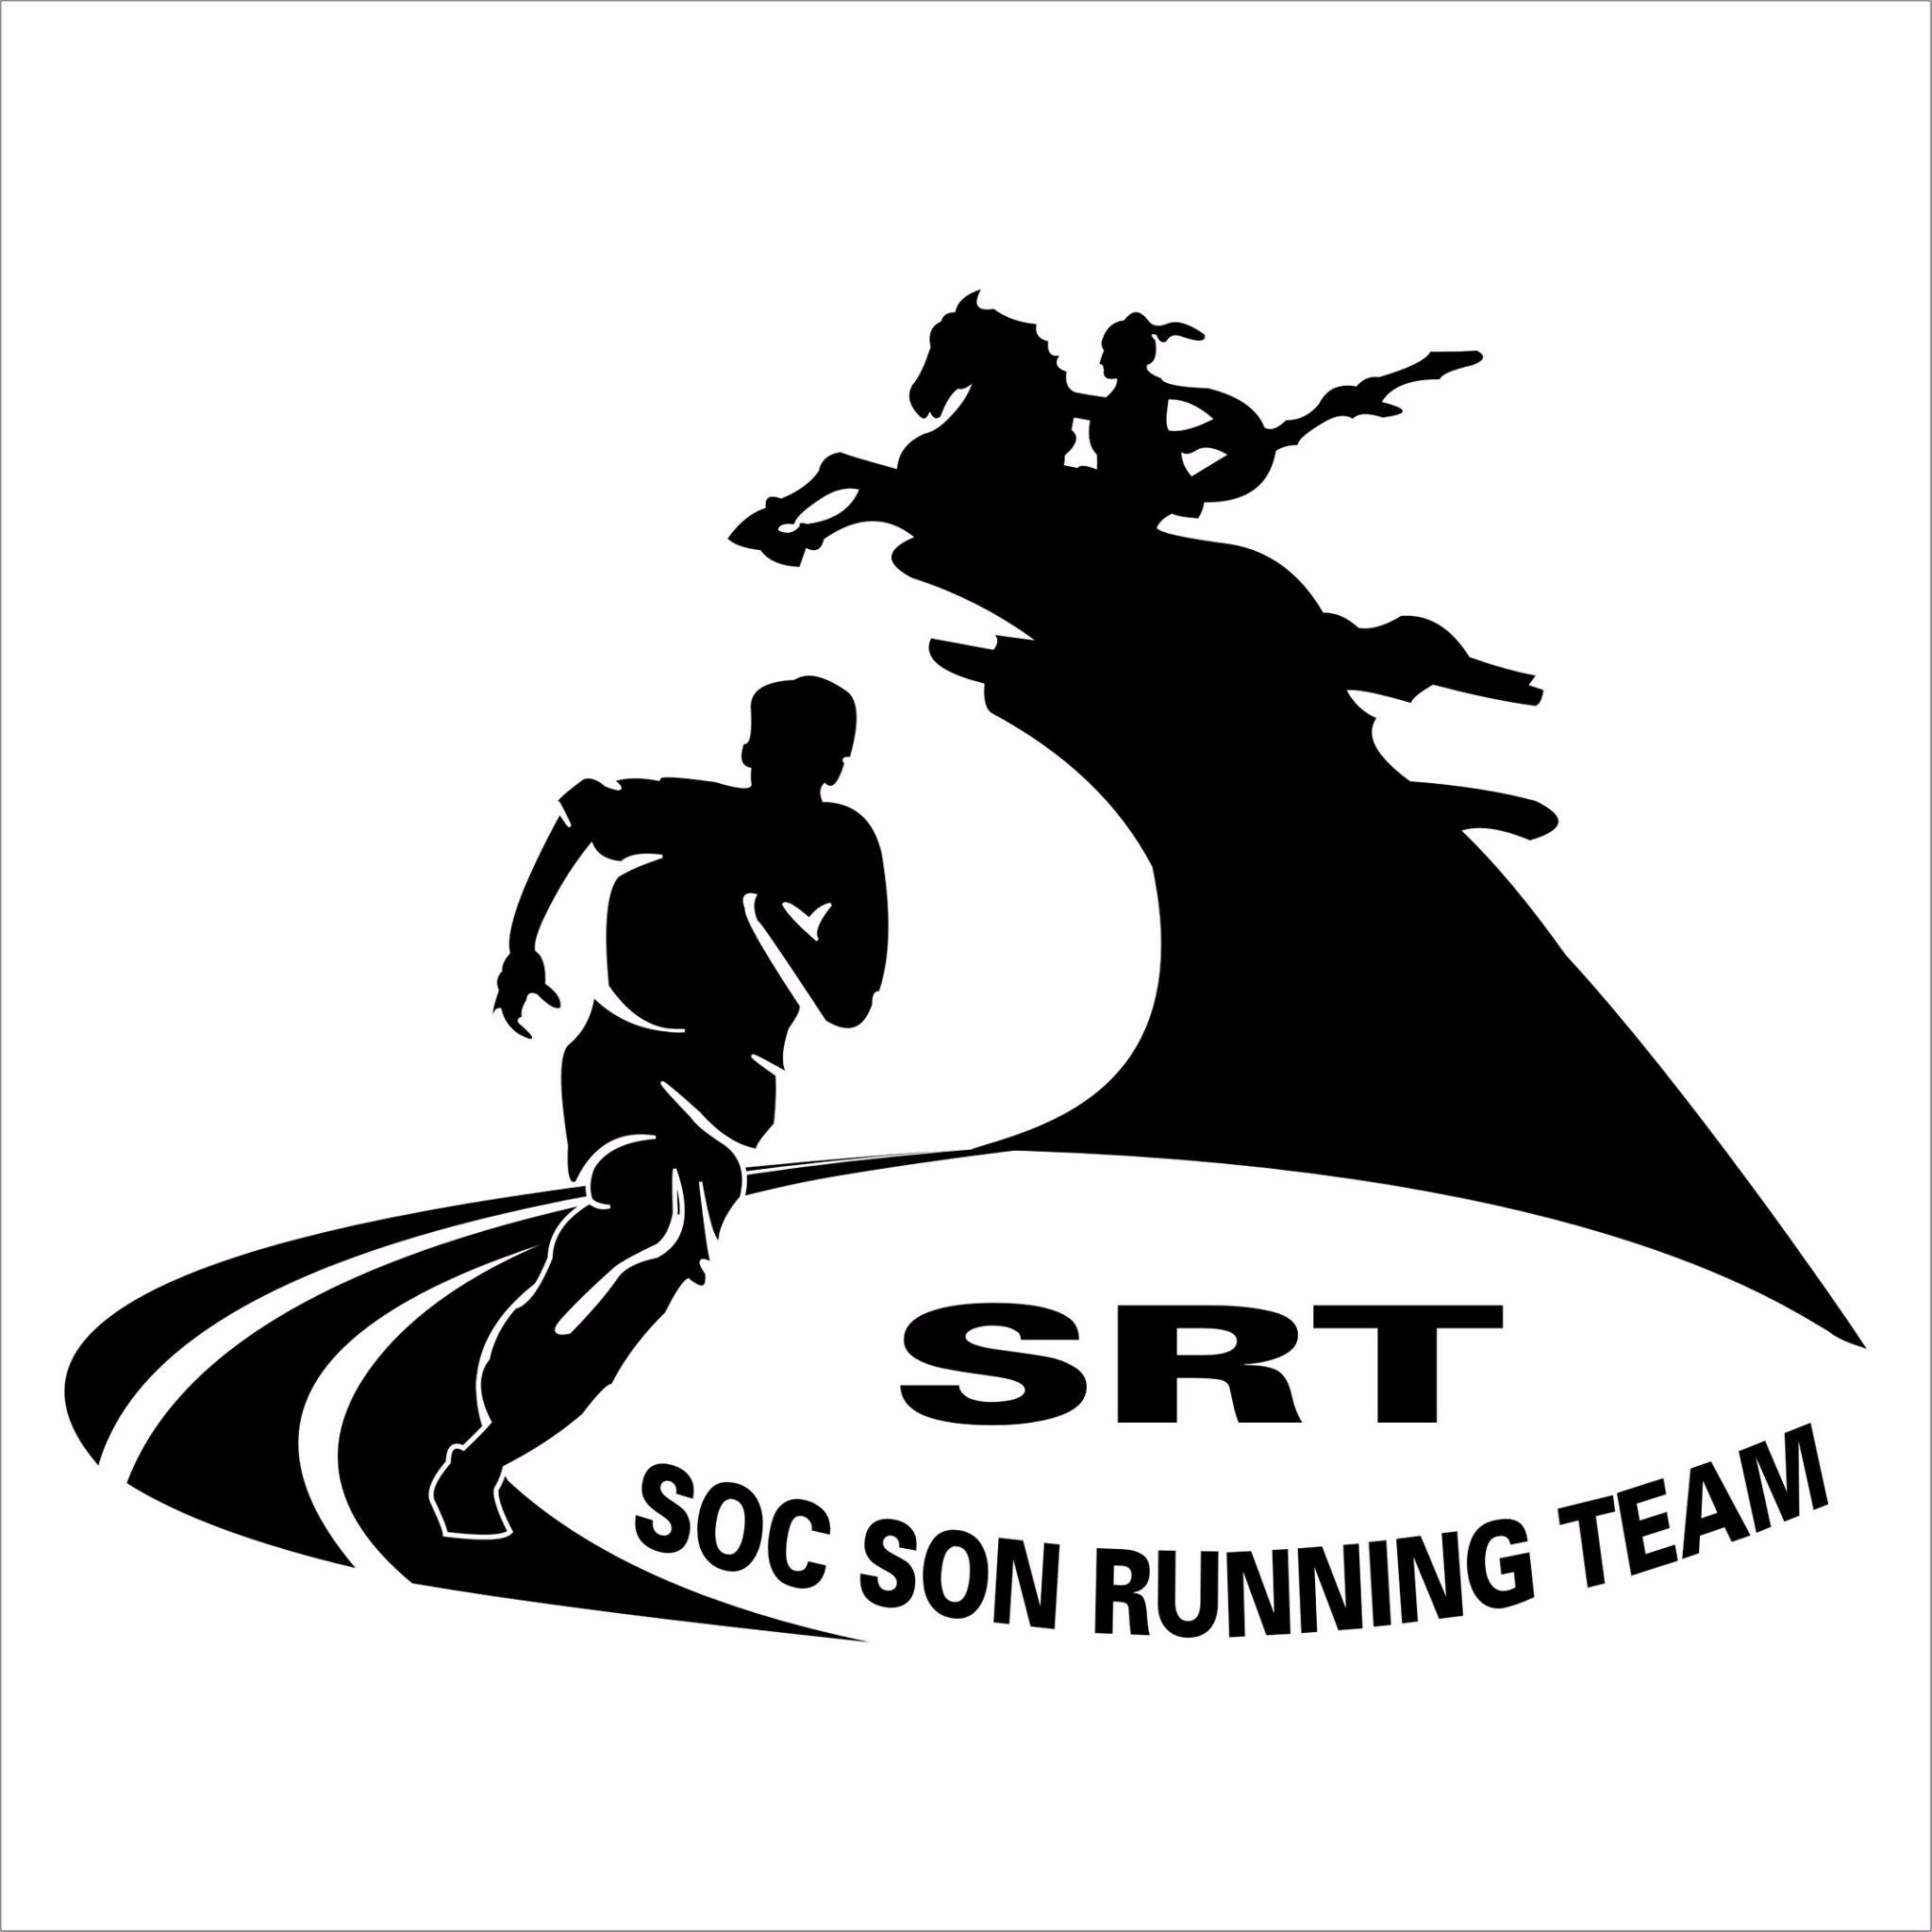 SRT- SOC SON RUNNING TEAM